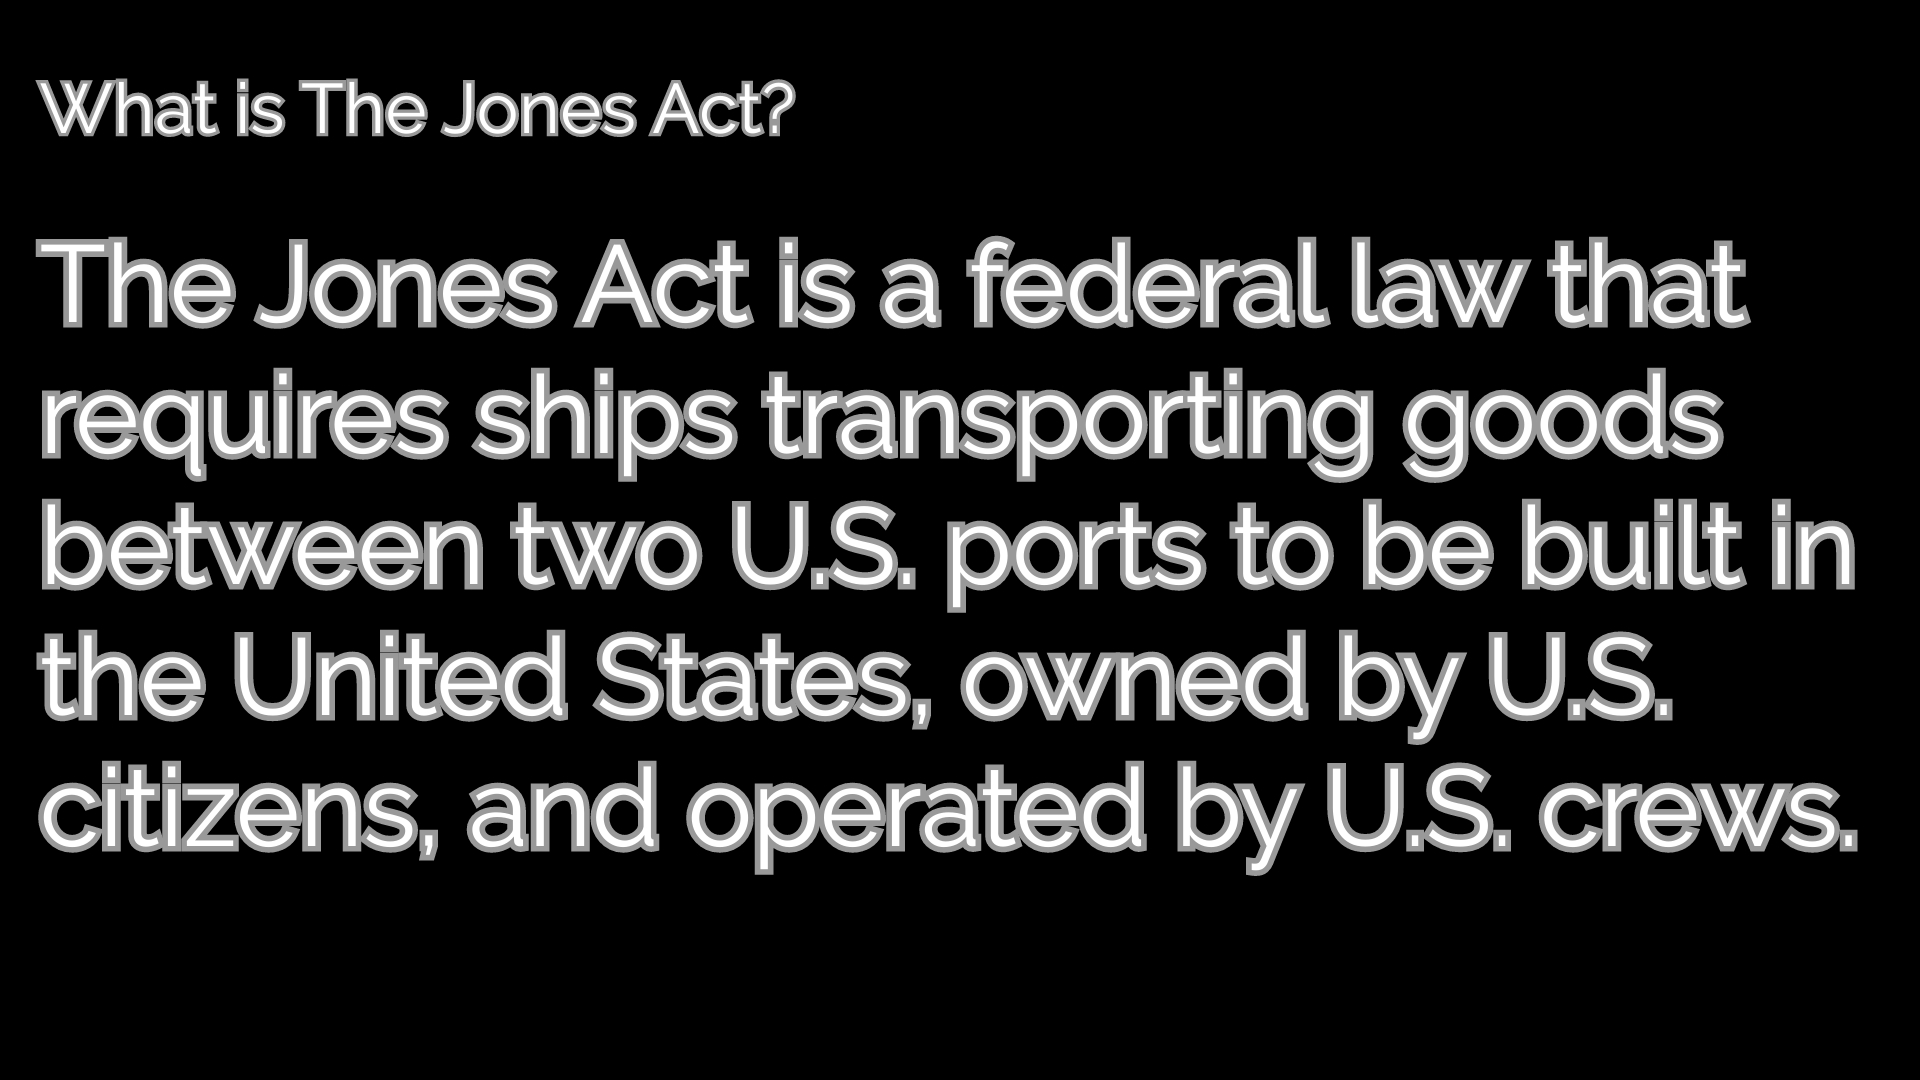 Jones Act Defined